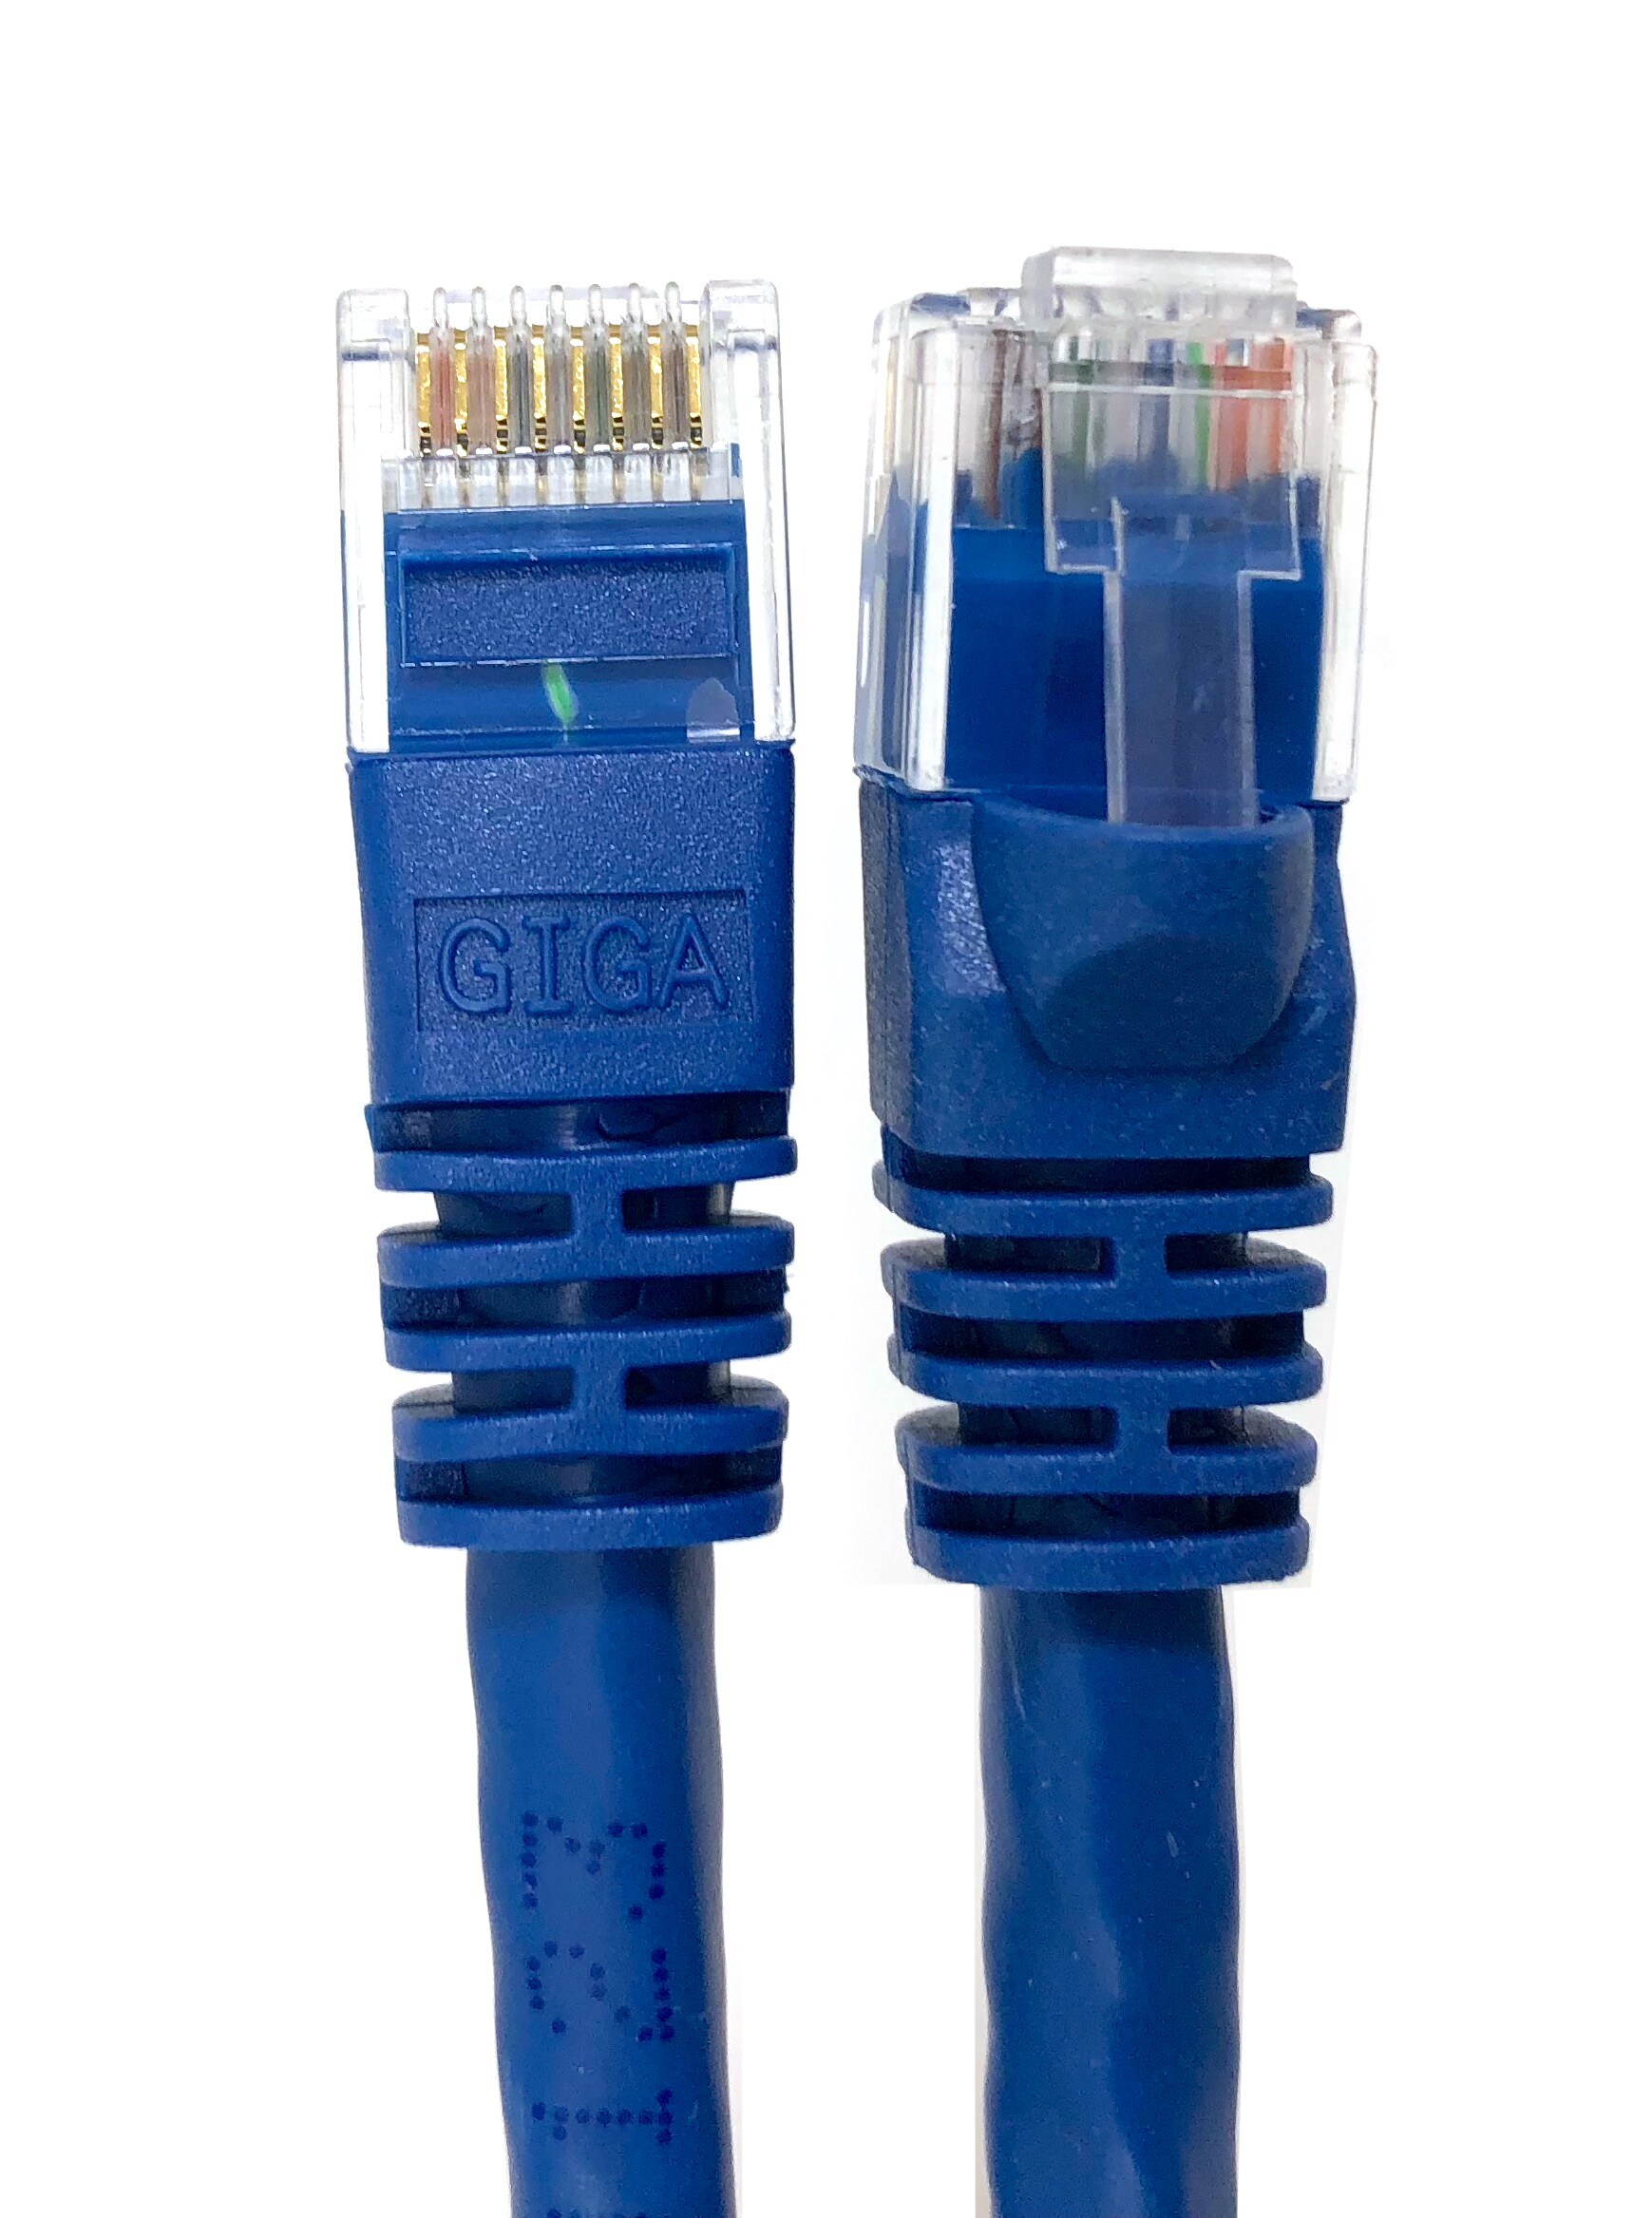 noir 5 pièces Patch pour le switch modem câble de Patch 0,5m Câble Réseau RJ45 10 / 100 / 1000 Mo/s compatible avec CAT 5 / CAT 6a / CAT 7 CAT6 Câble Ethernet Set 250 MHz LAN Câble |CAT 6 routeur 